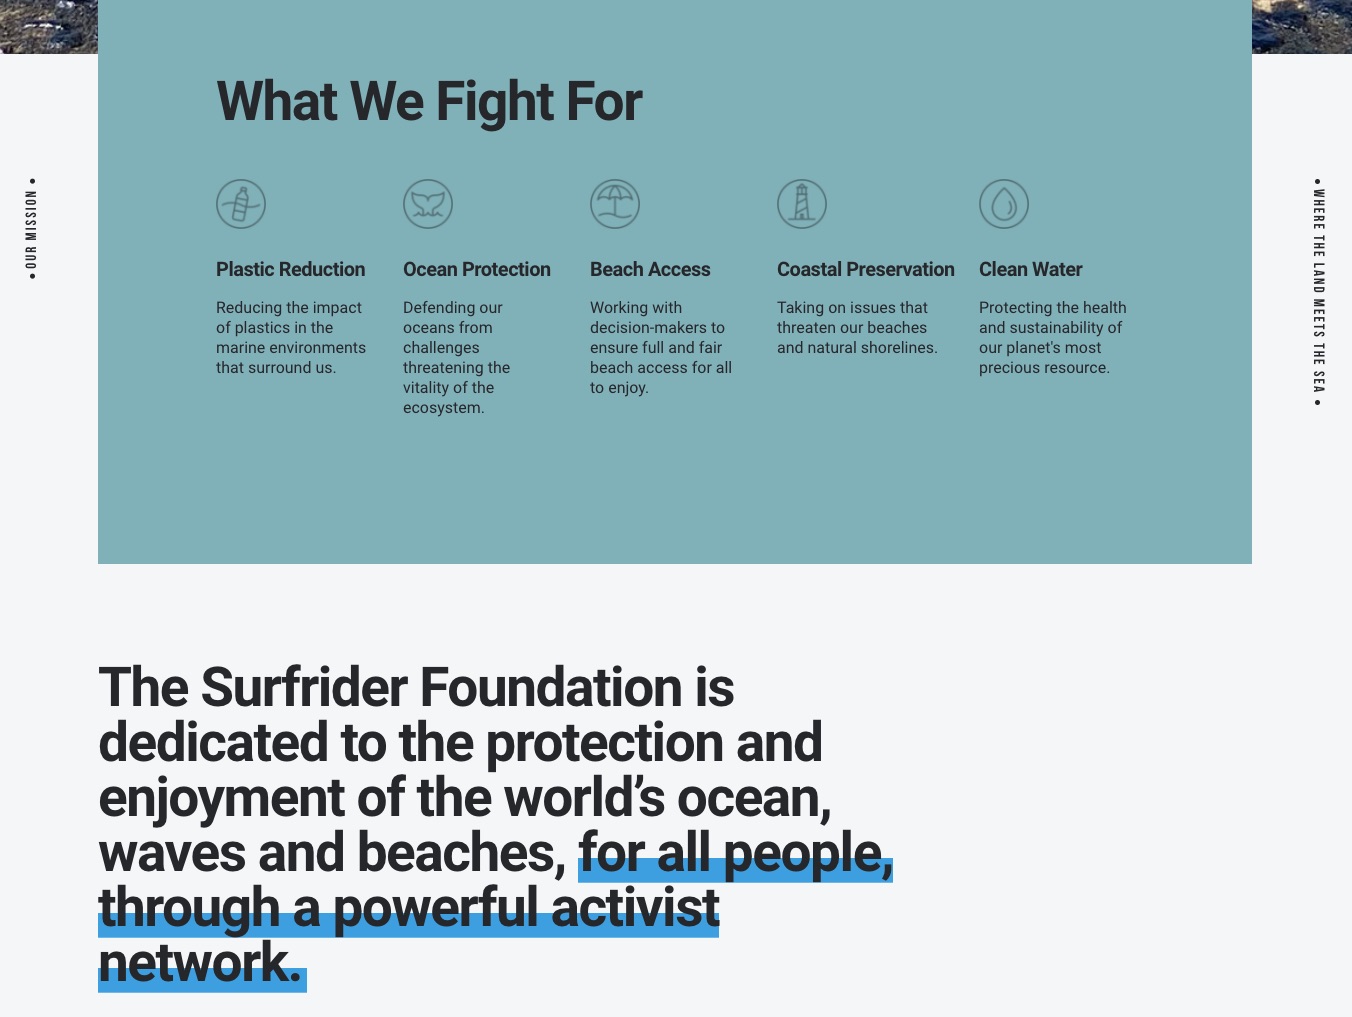 Surfrider nonprofit website mission